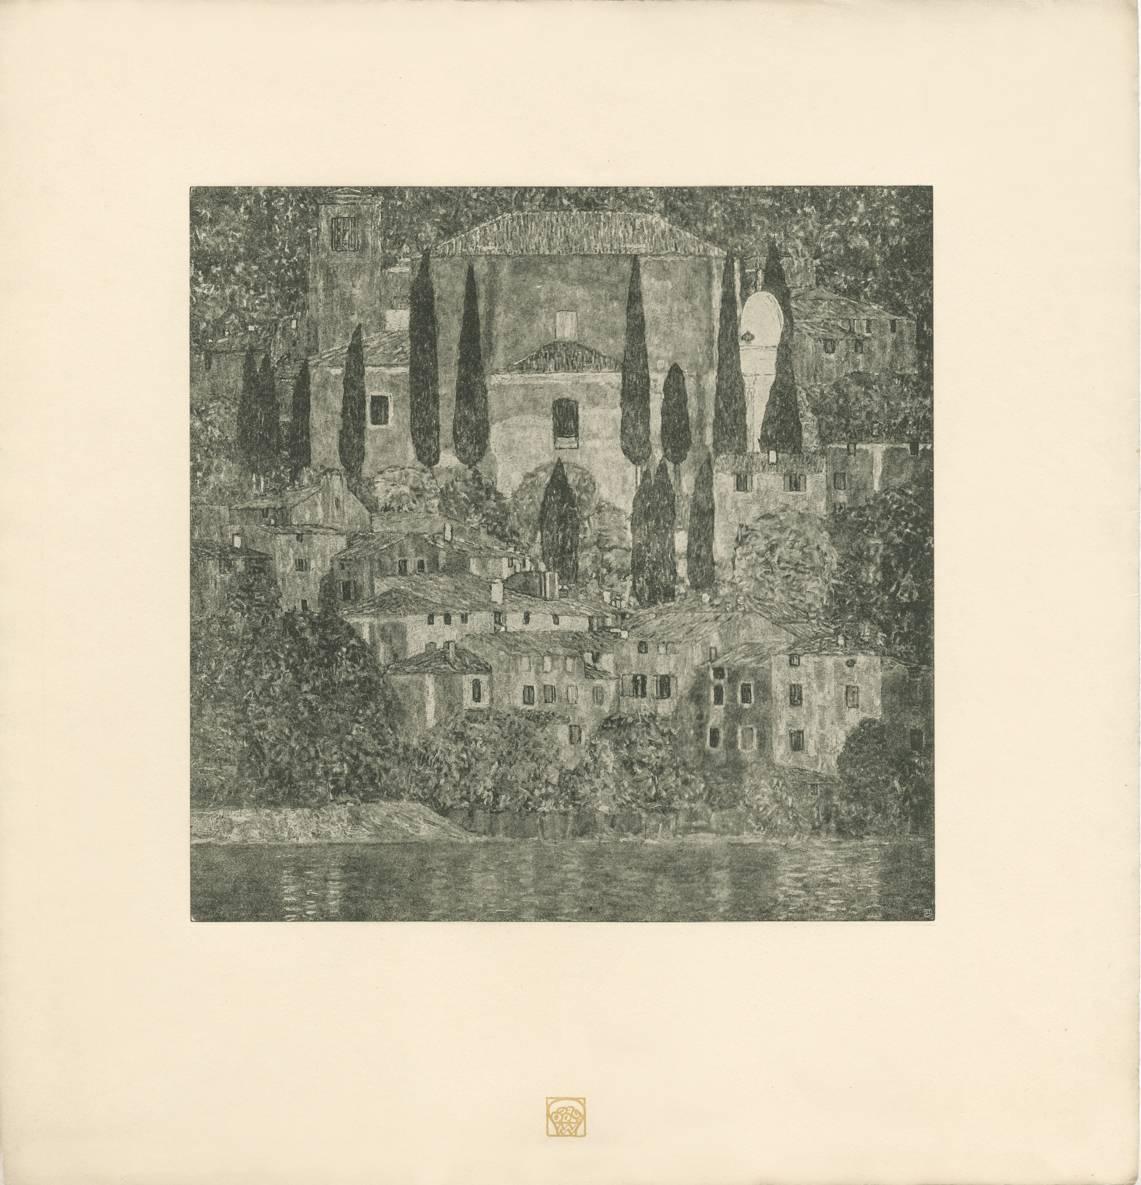 Gustav Klimt & K.K. Hof-und Staatsdruckerei Landscape Print - H.O. Miethke Das Werk folio "Church in Cassone" collotype print